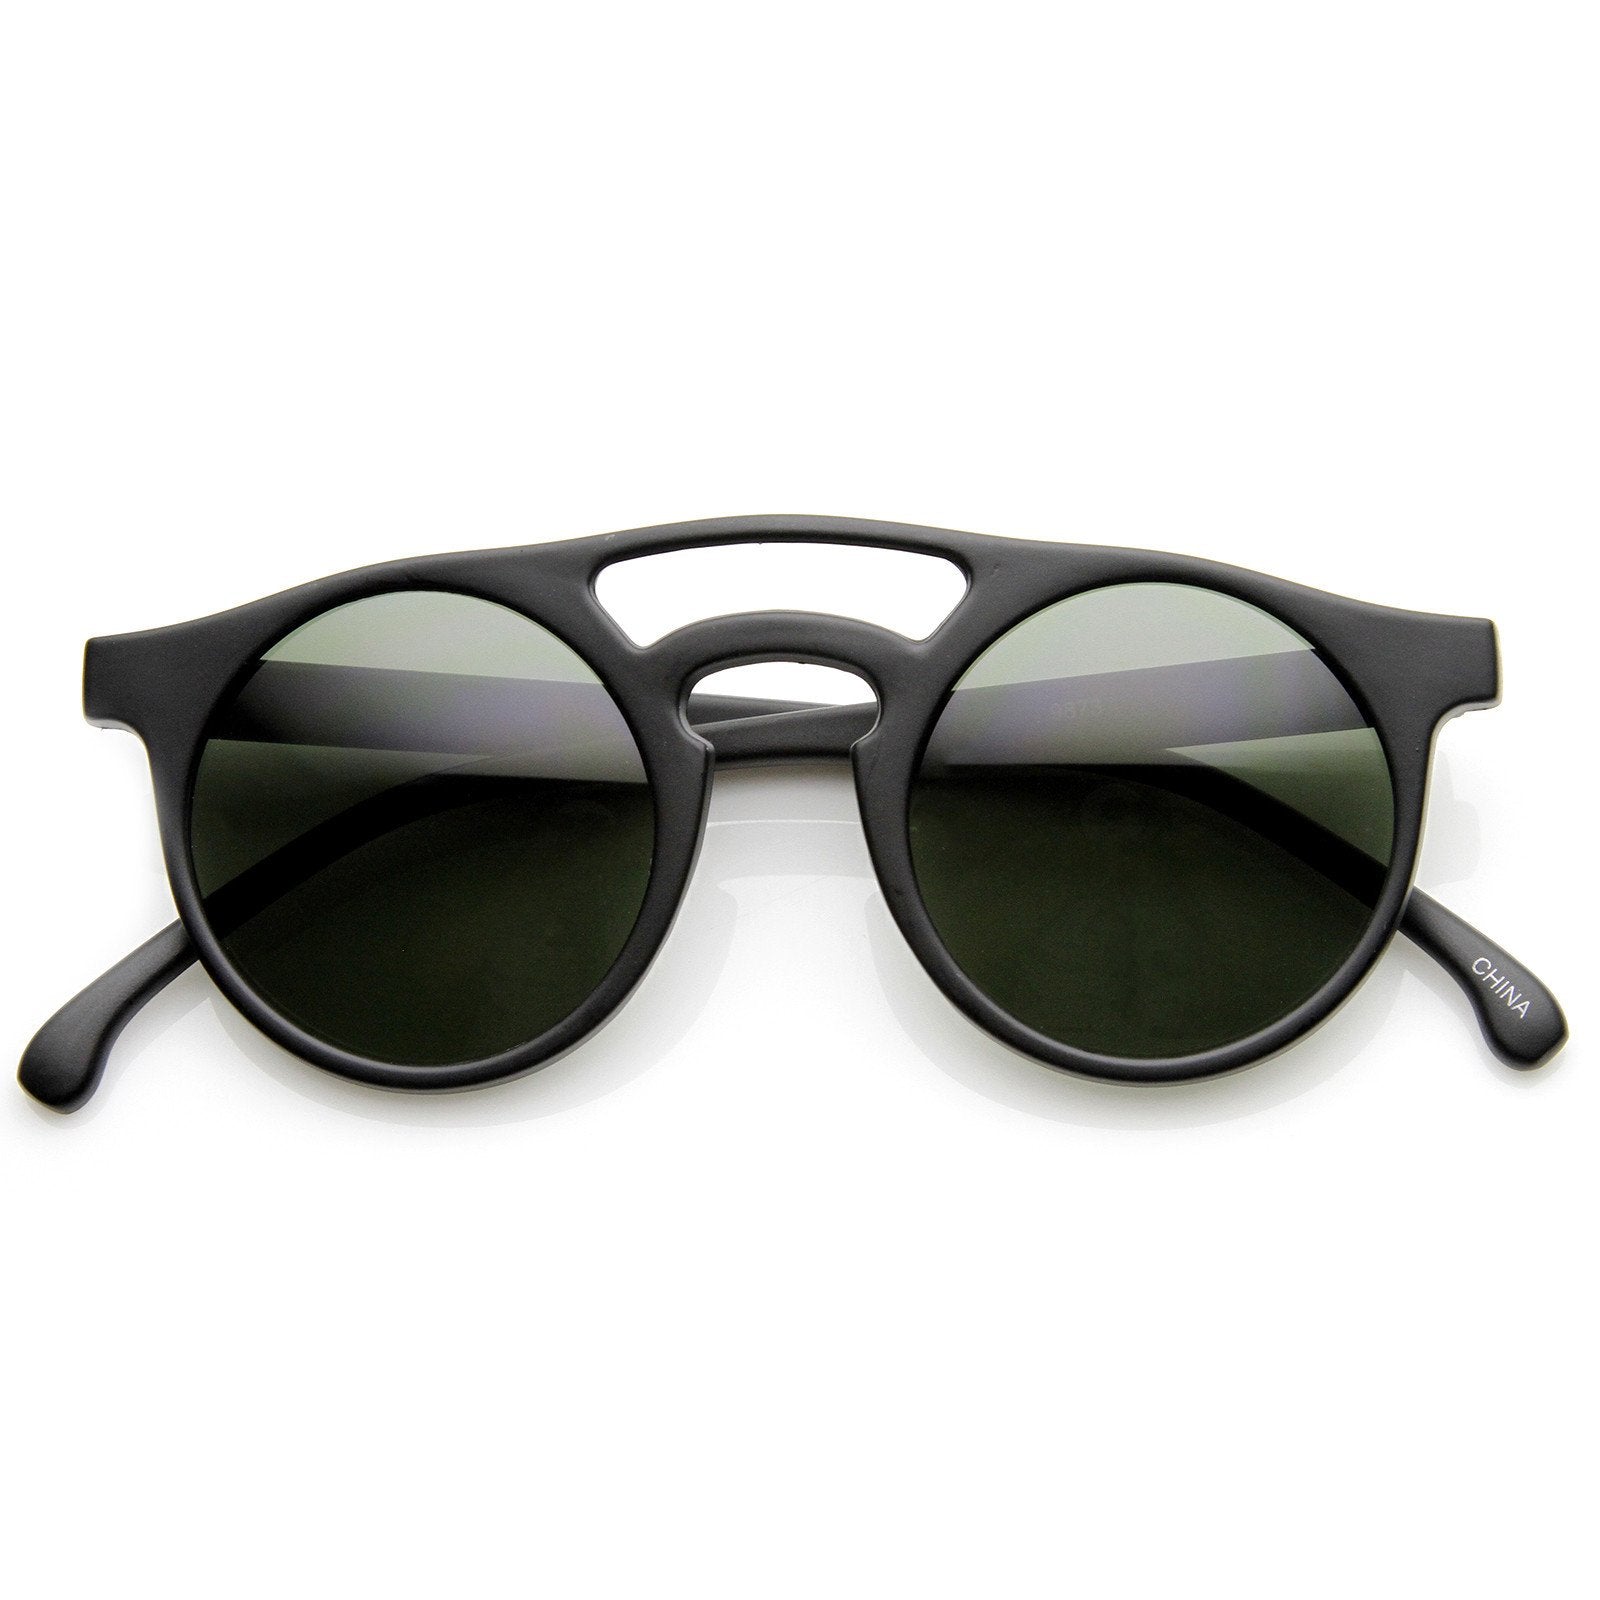 Indie Retro P3 Dapper Fashion Round Sunglasses - zeroUV